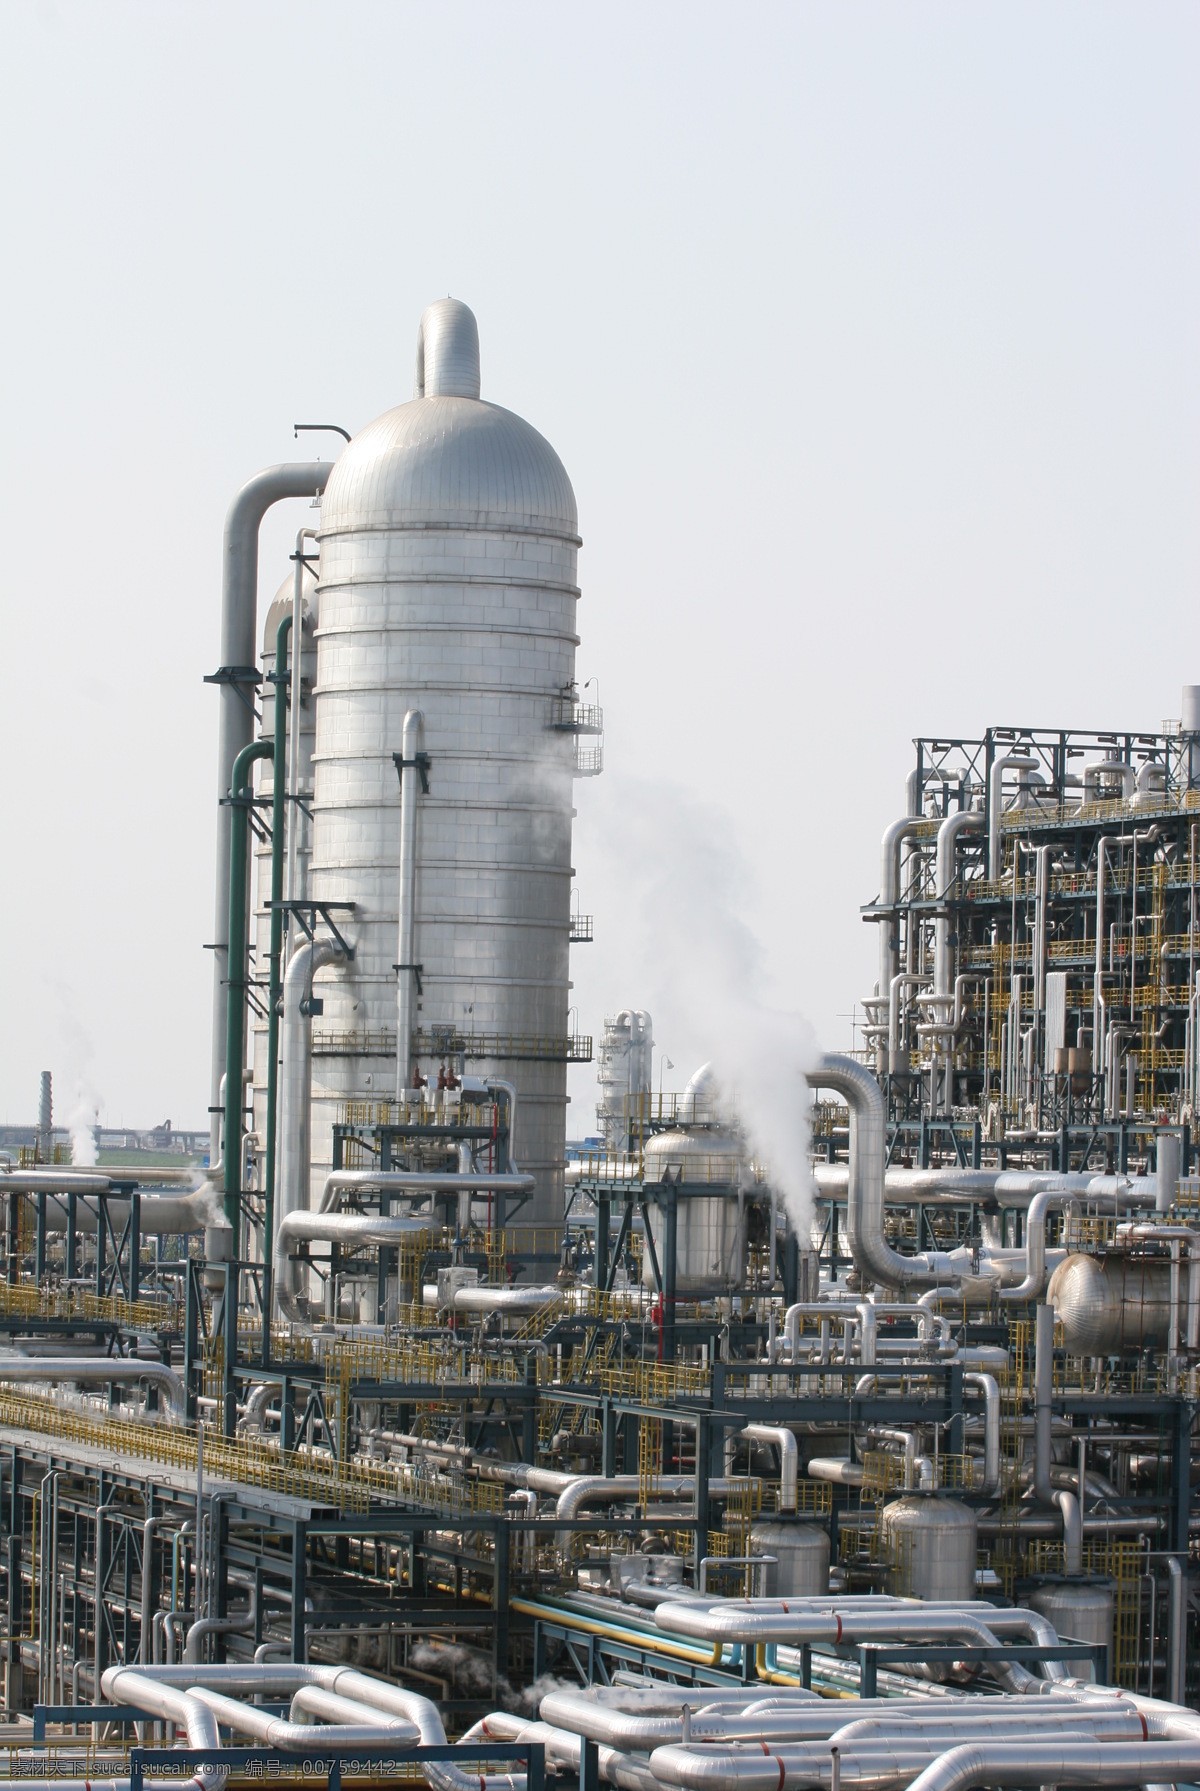 炼油厂装置图 炼油厂 装置 炼油装置 工厂设备图 工业生产 现代科技